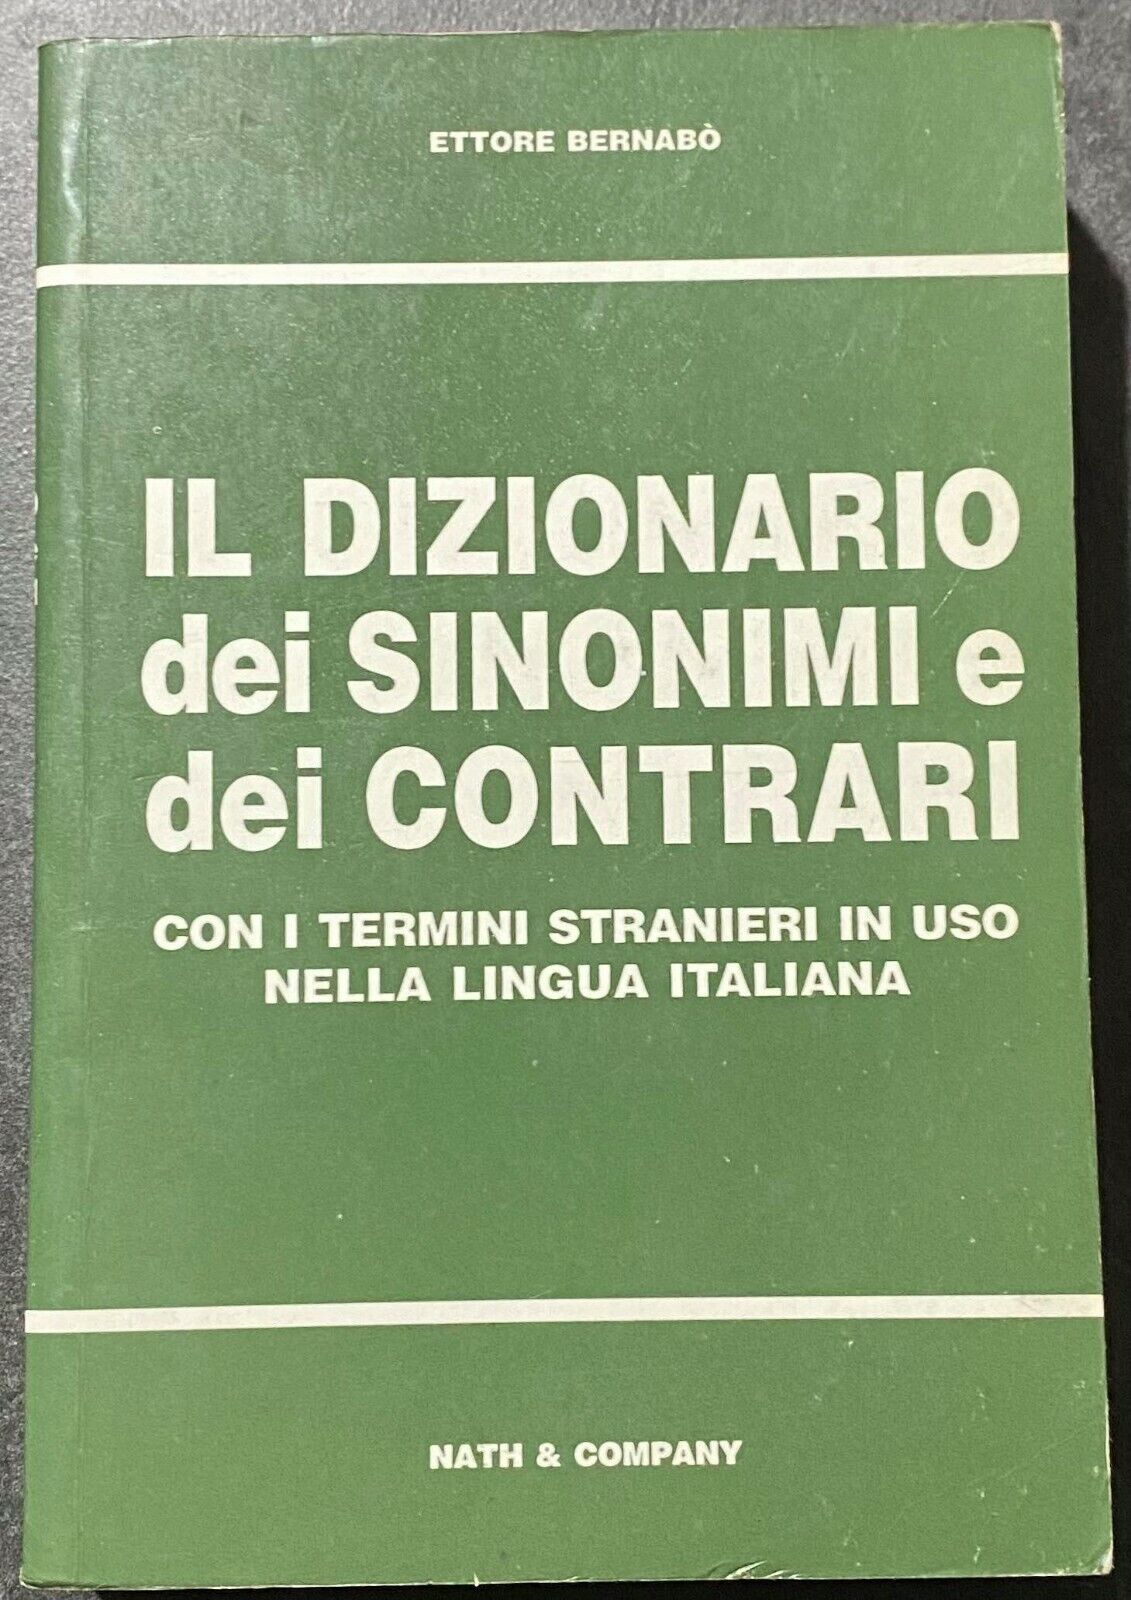 Il dizionario dei sinonimi e dei contrari - Ettore Bernabo - Nath & Company -199